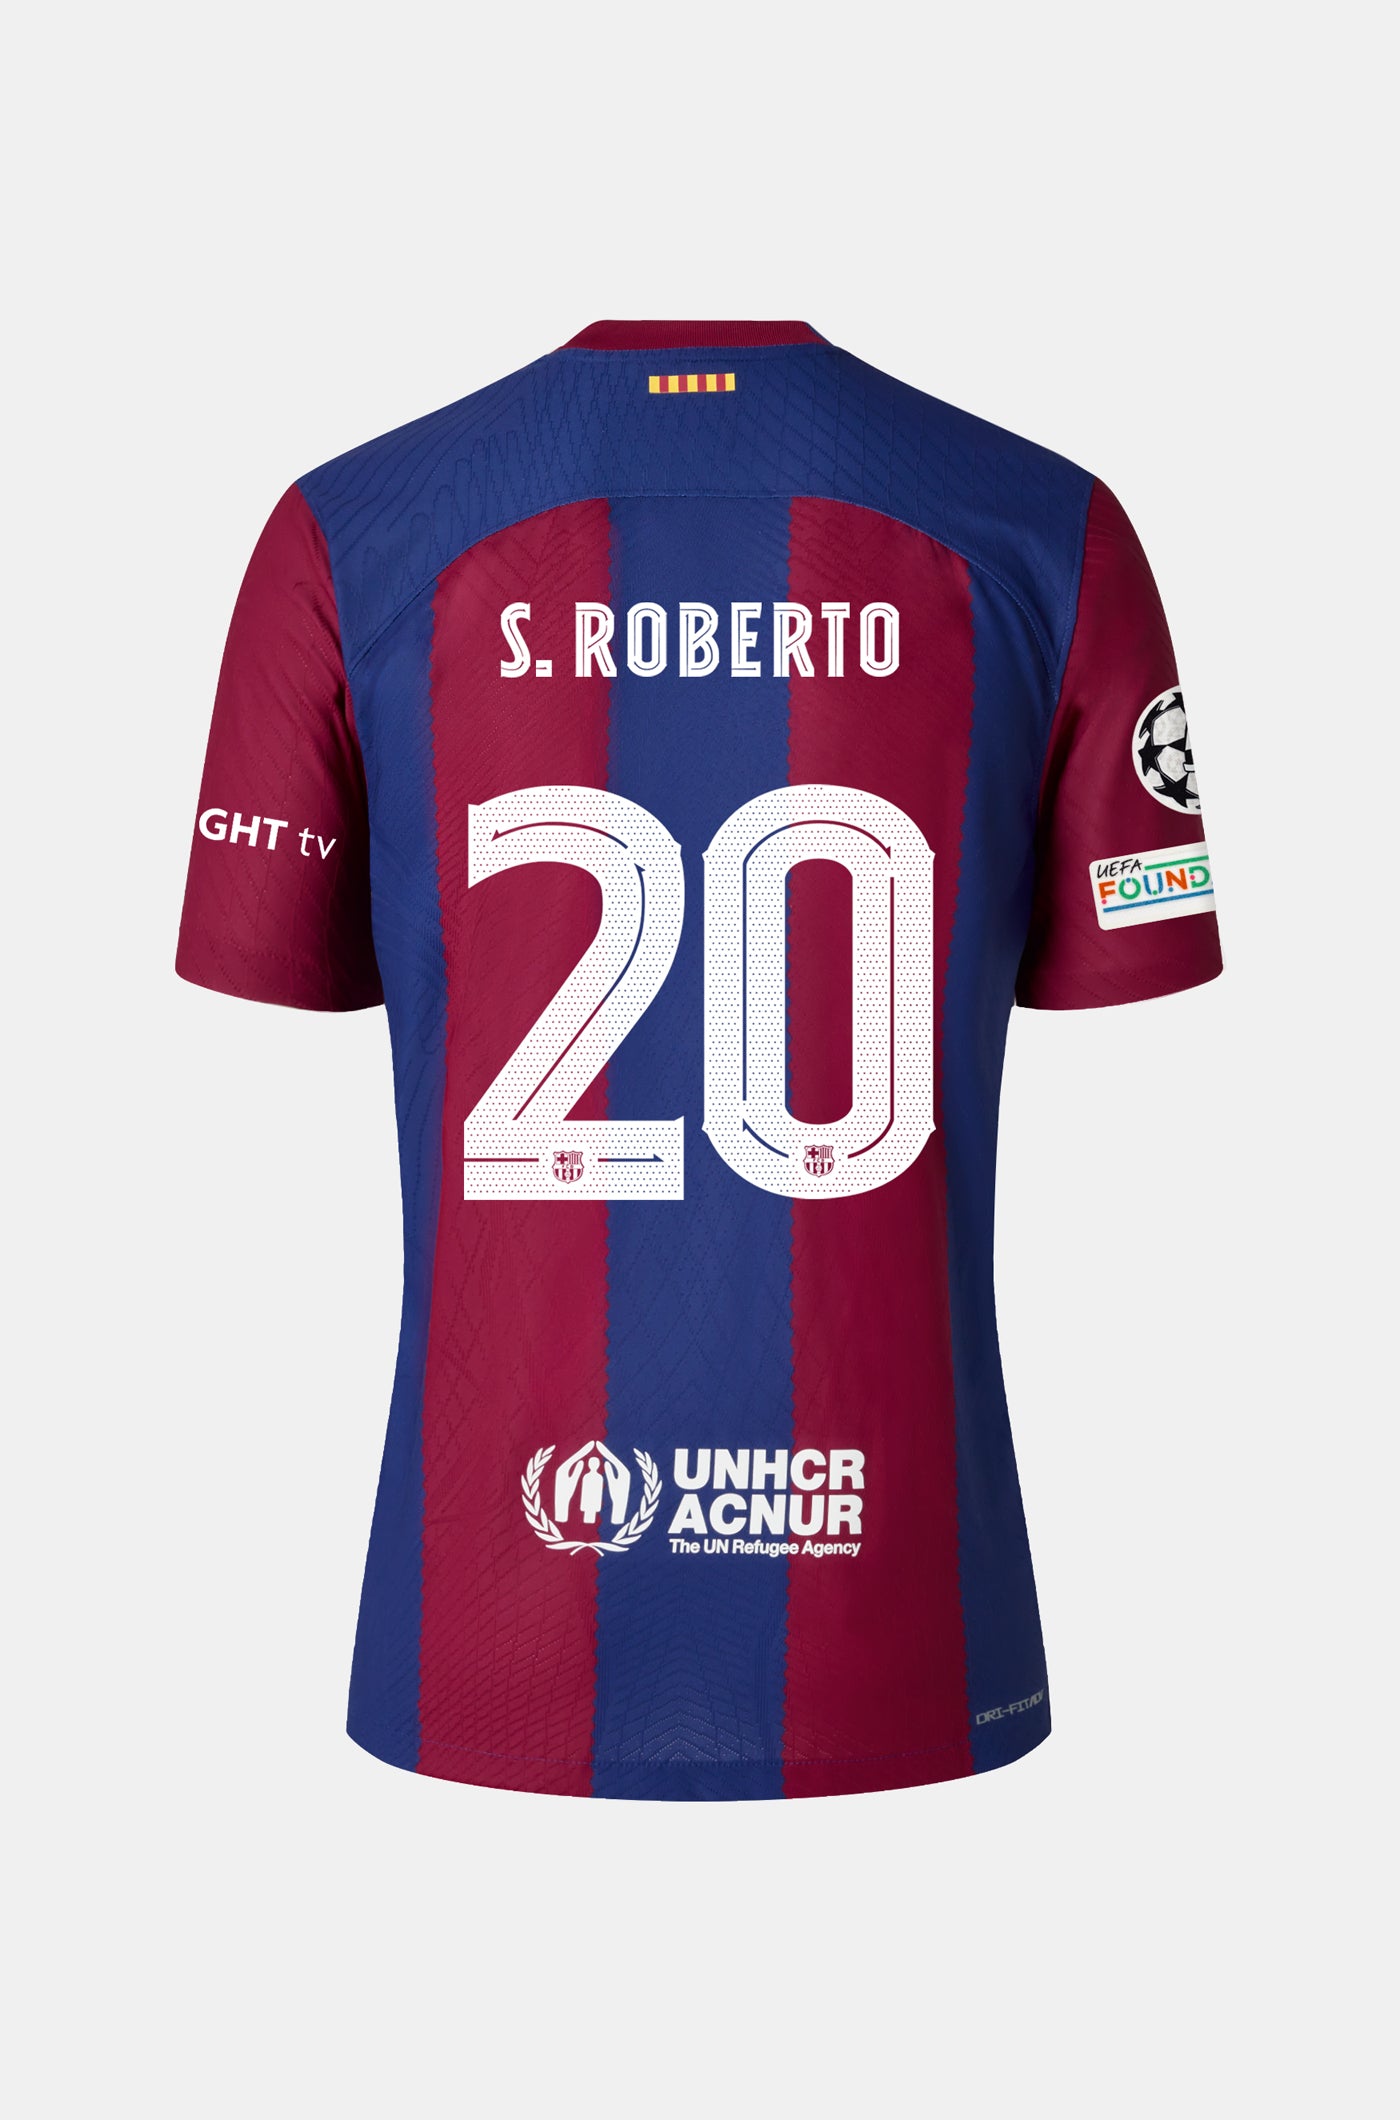 UCL FC Barcelona home shirt 23/24 - S. ROBERTO